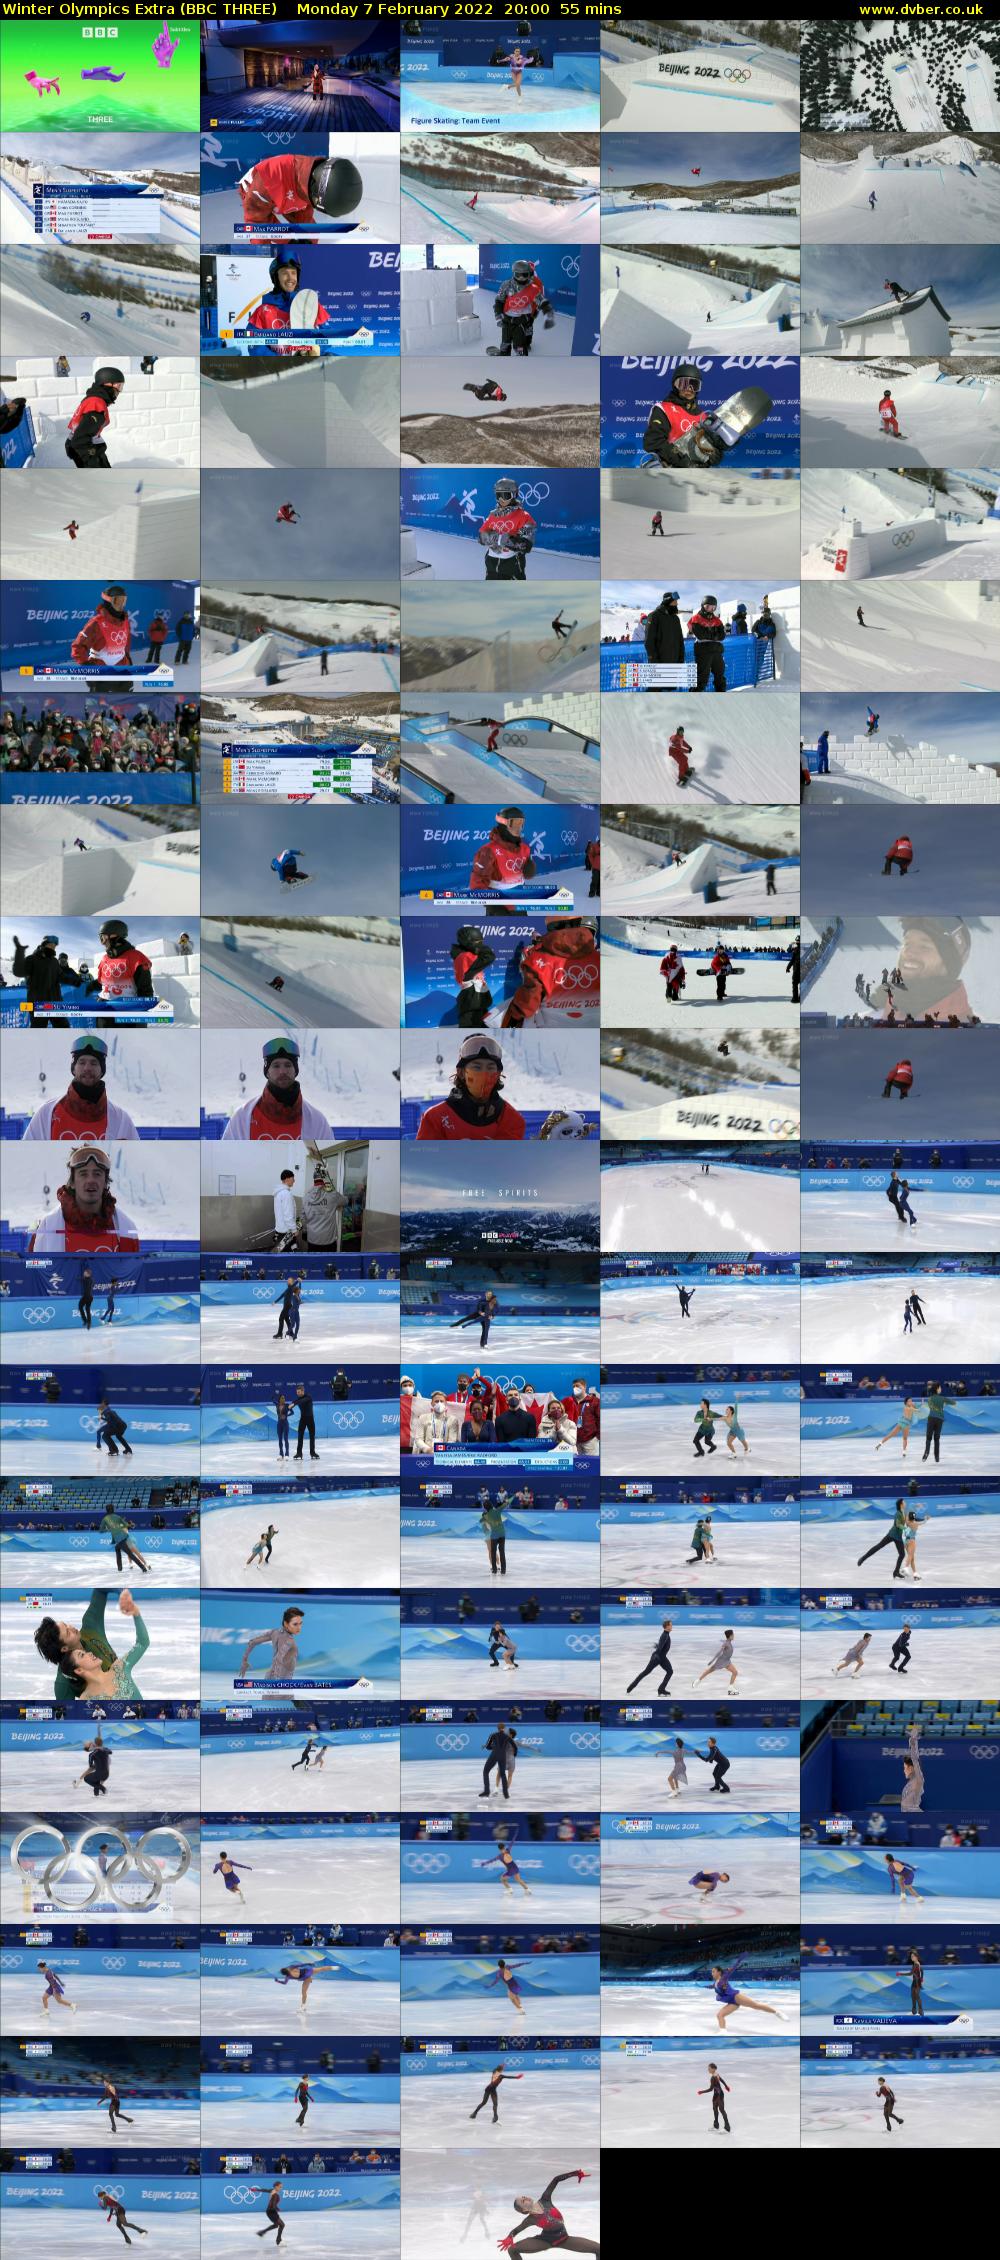 Winter Olympics Extra (BBC THREE) Monday 7 February 2022 20:00 - 20:55